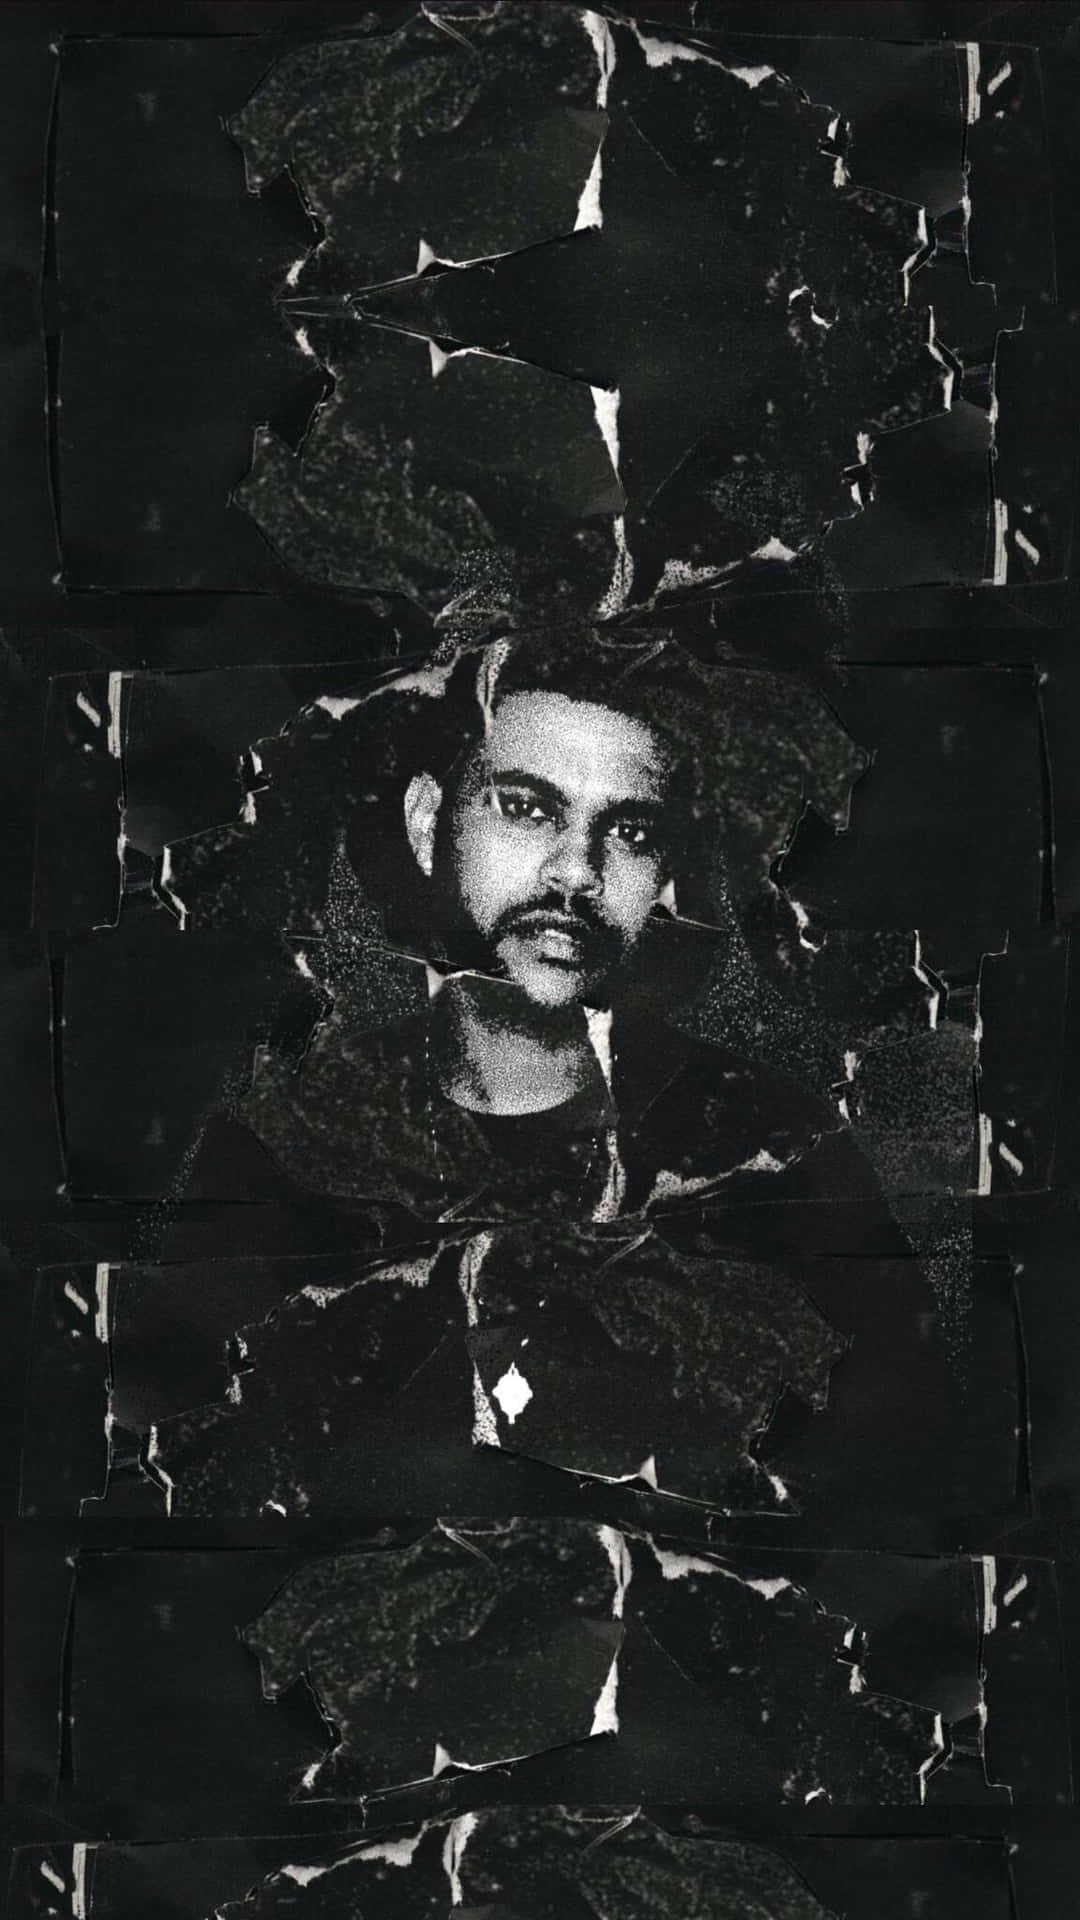 Presentandoel Nuevo Iphone Temático De The Weeknd. Fondo de pantalla